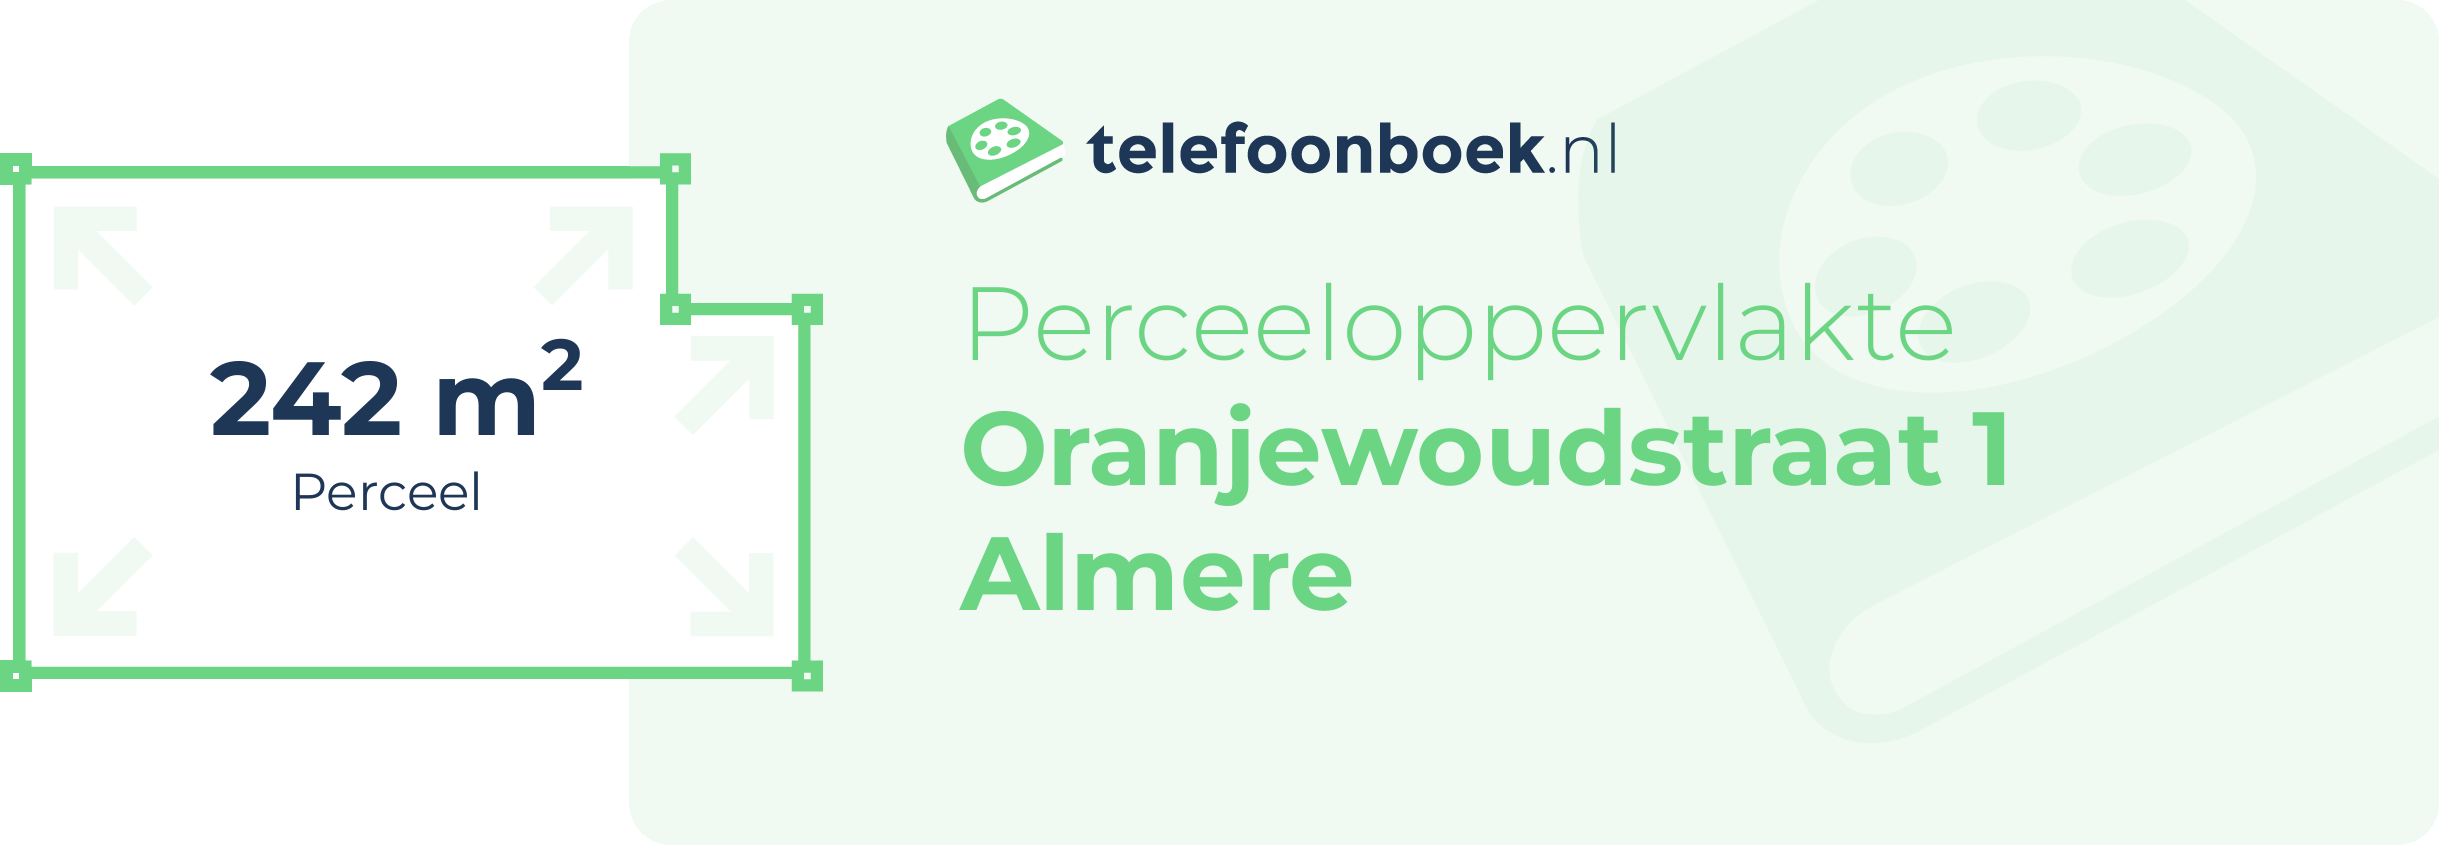 Perceeloppervlakte Oranjewoudstraat 1 Almere